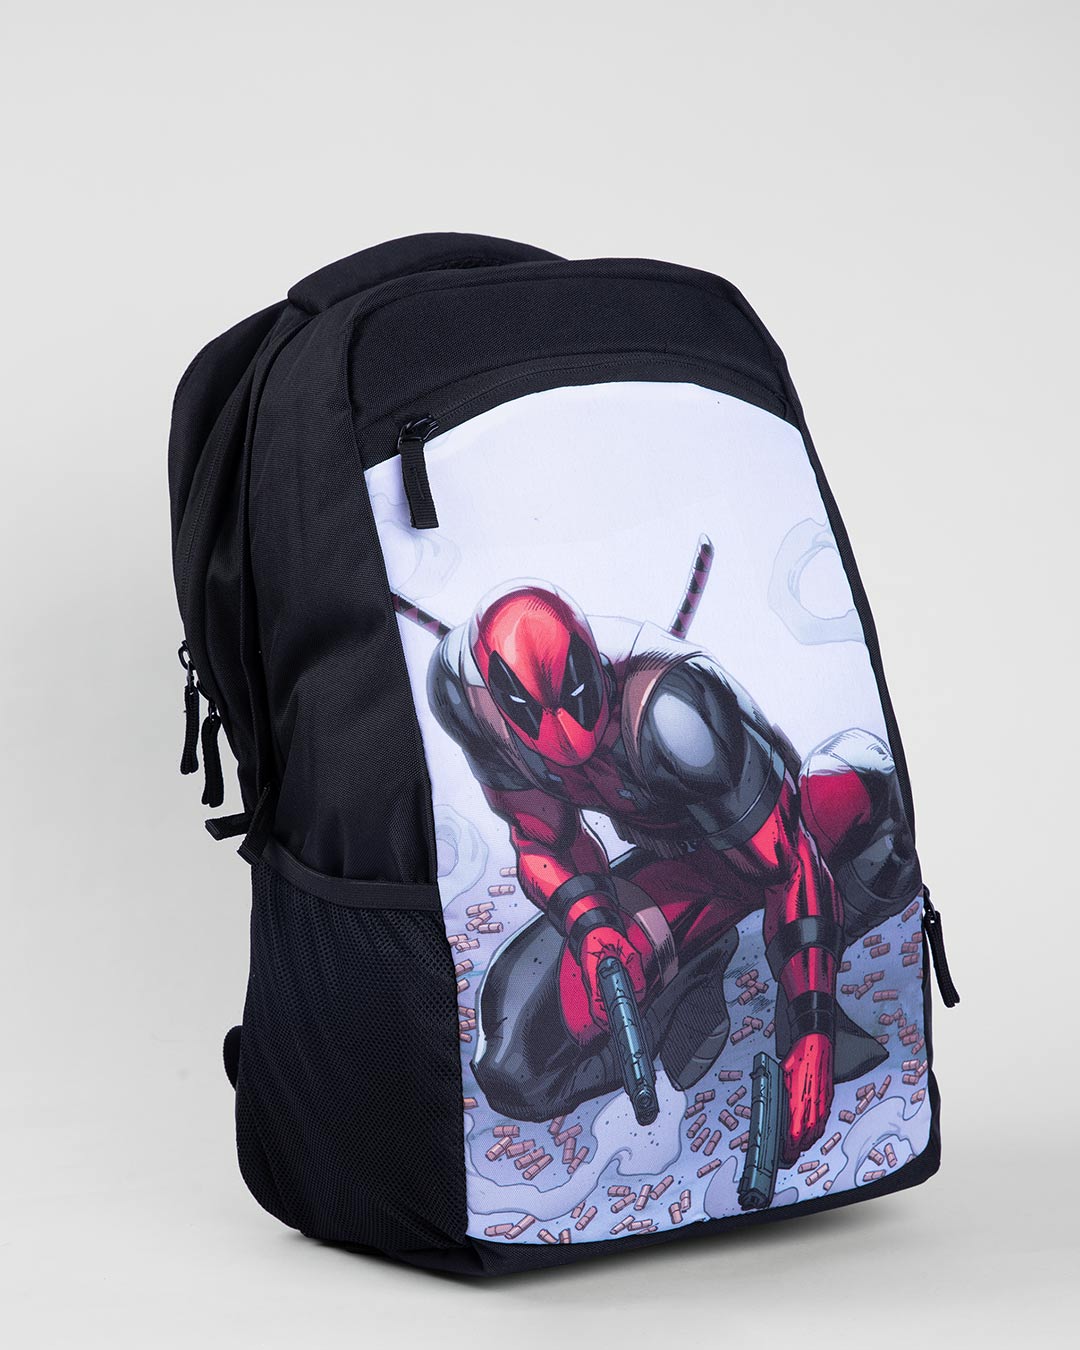 Marvel Deadpool School Bag pack  eBay